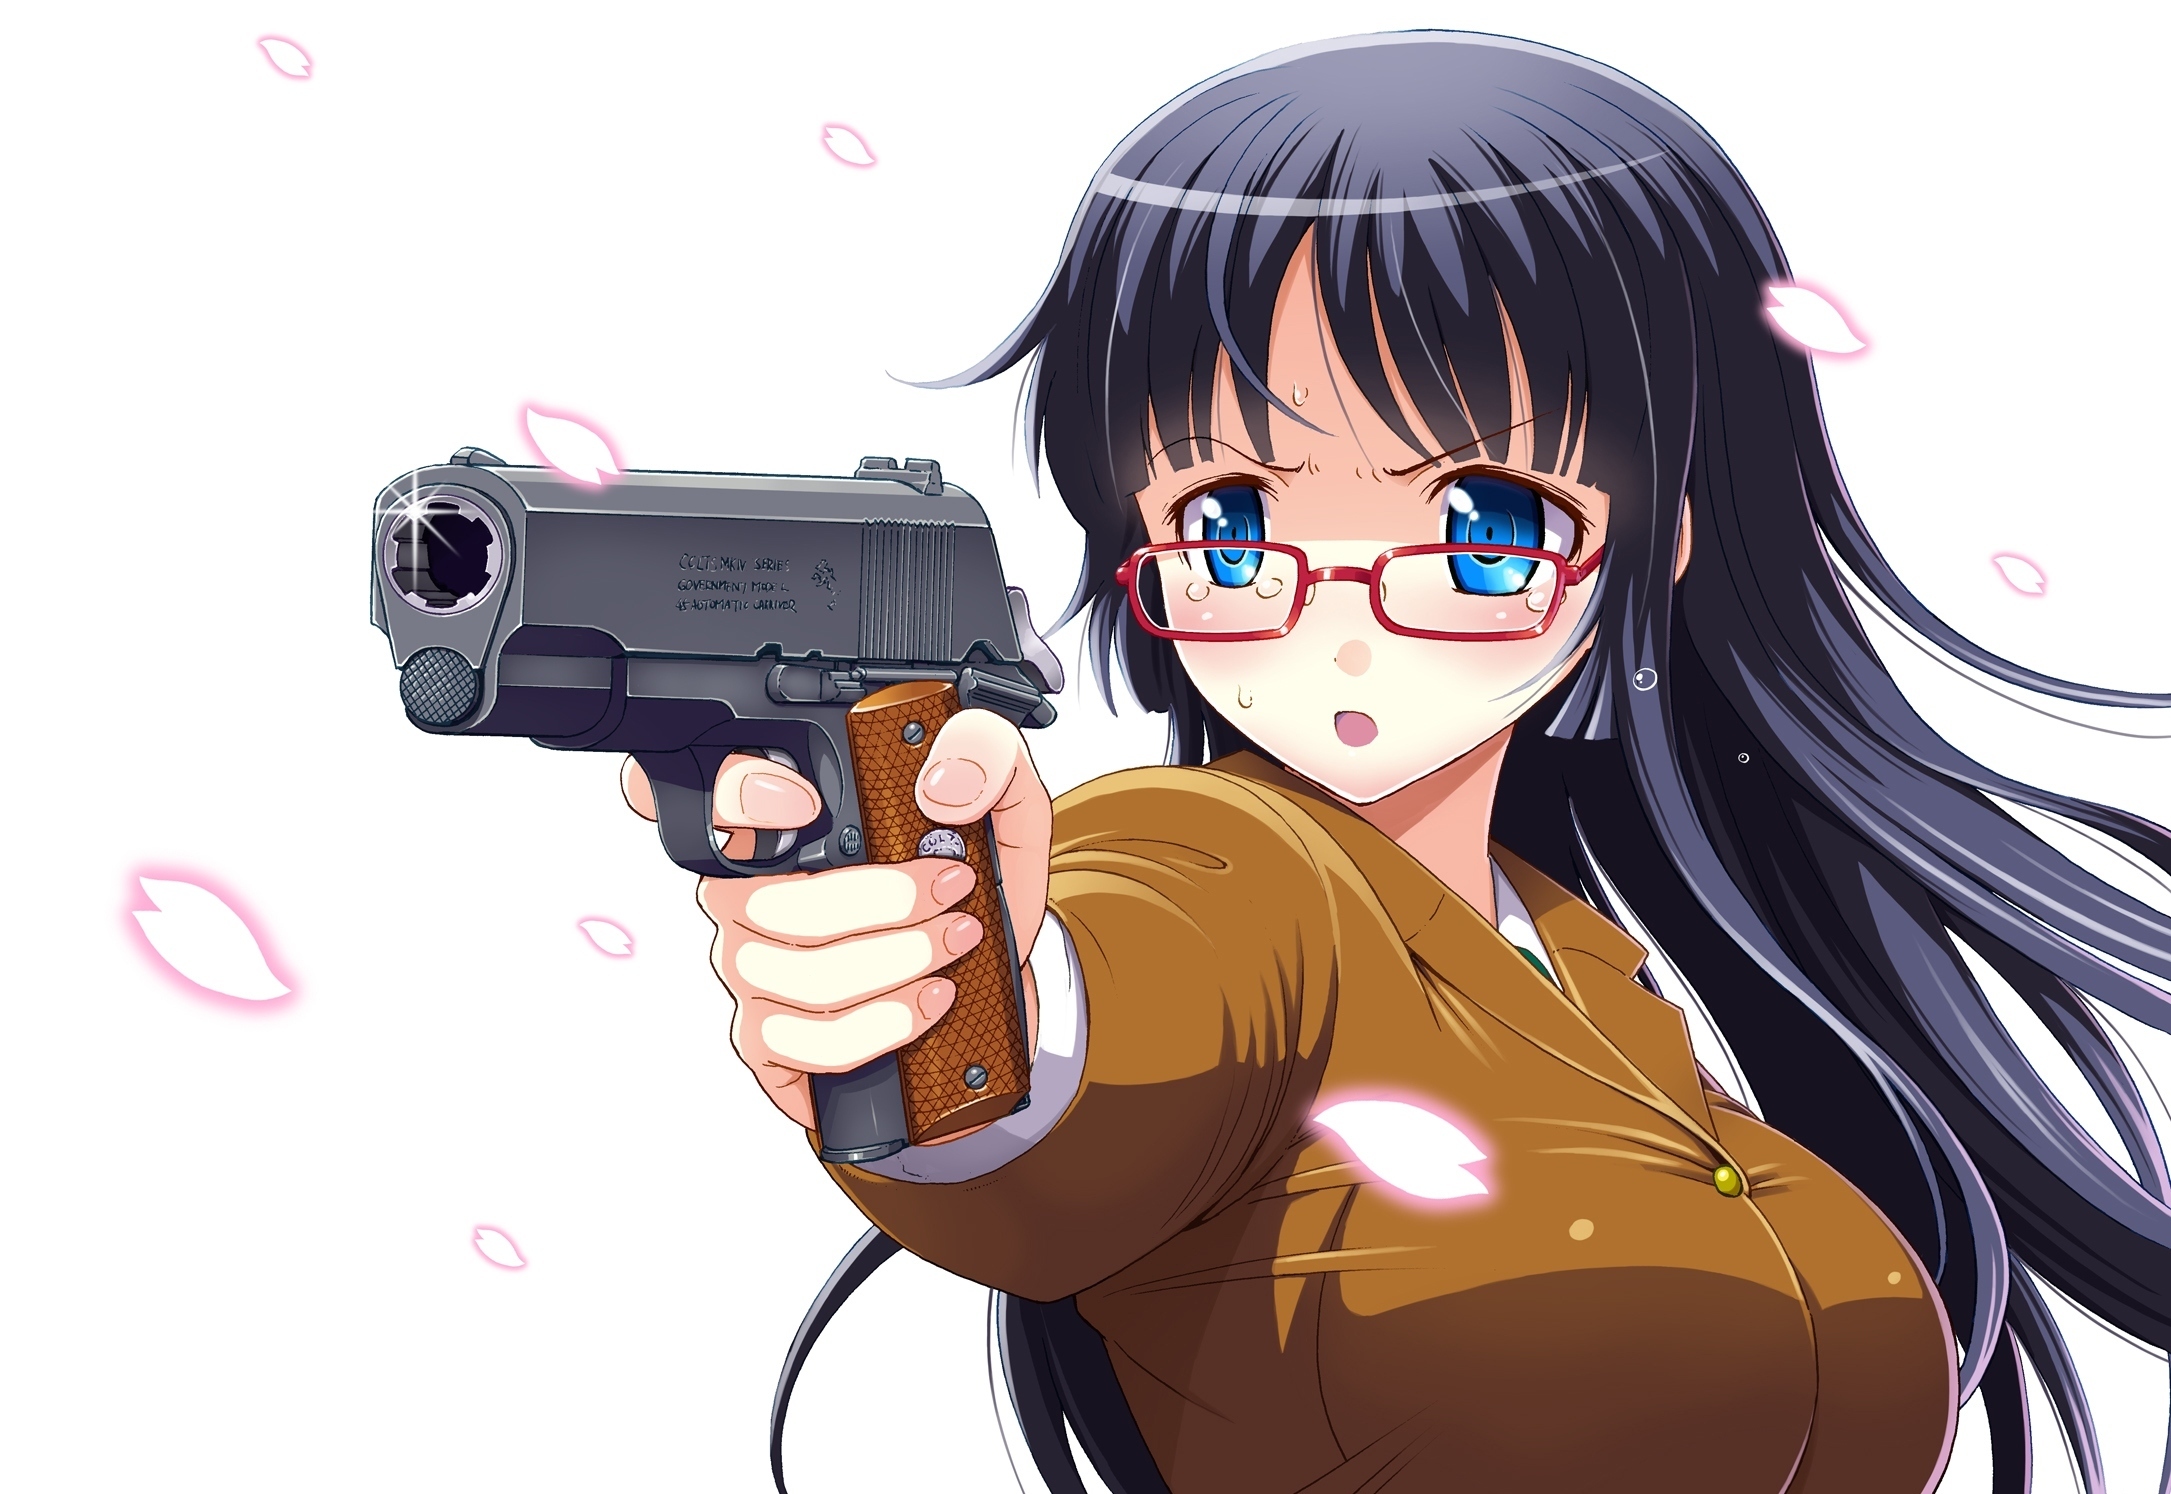 (hagakure), original волос Аниме девушка очков 2171x1494 пистолет пистолето...